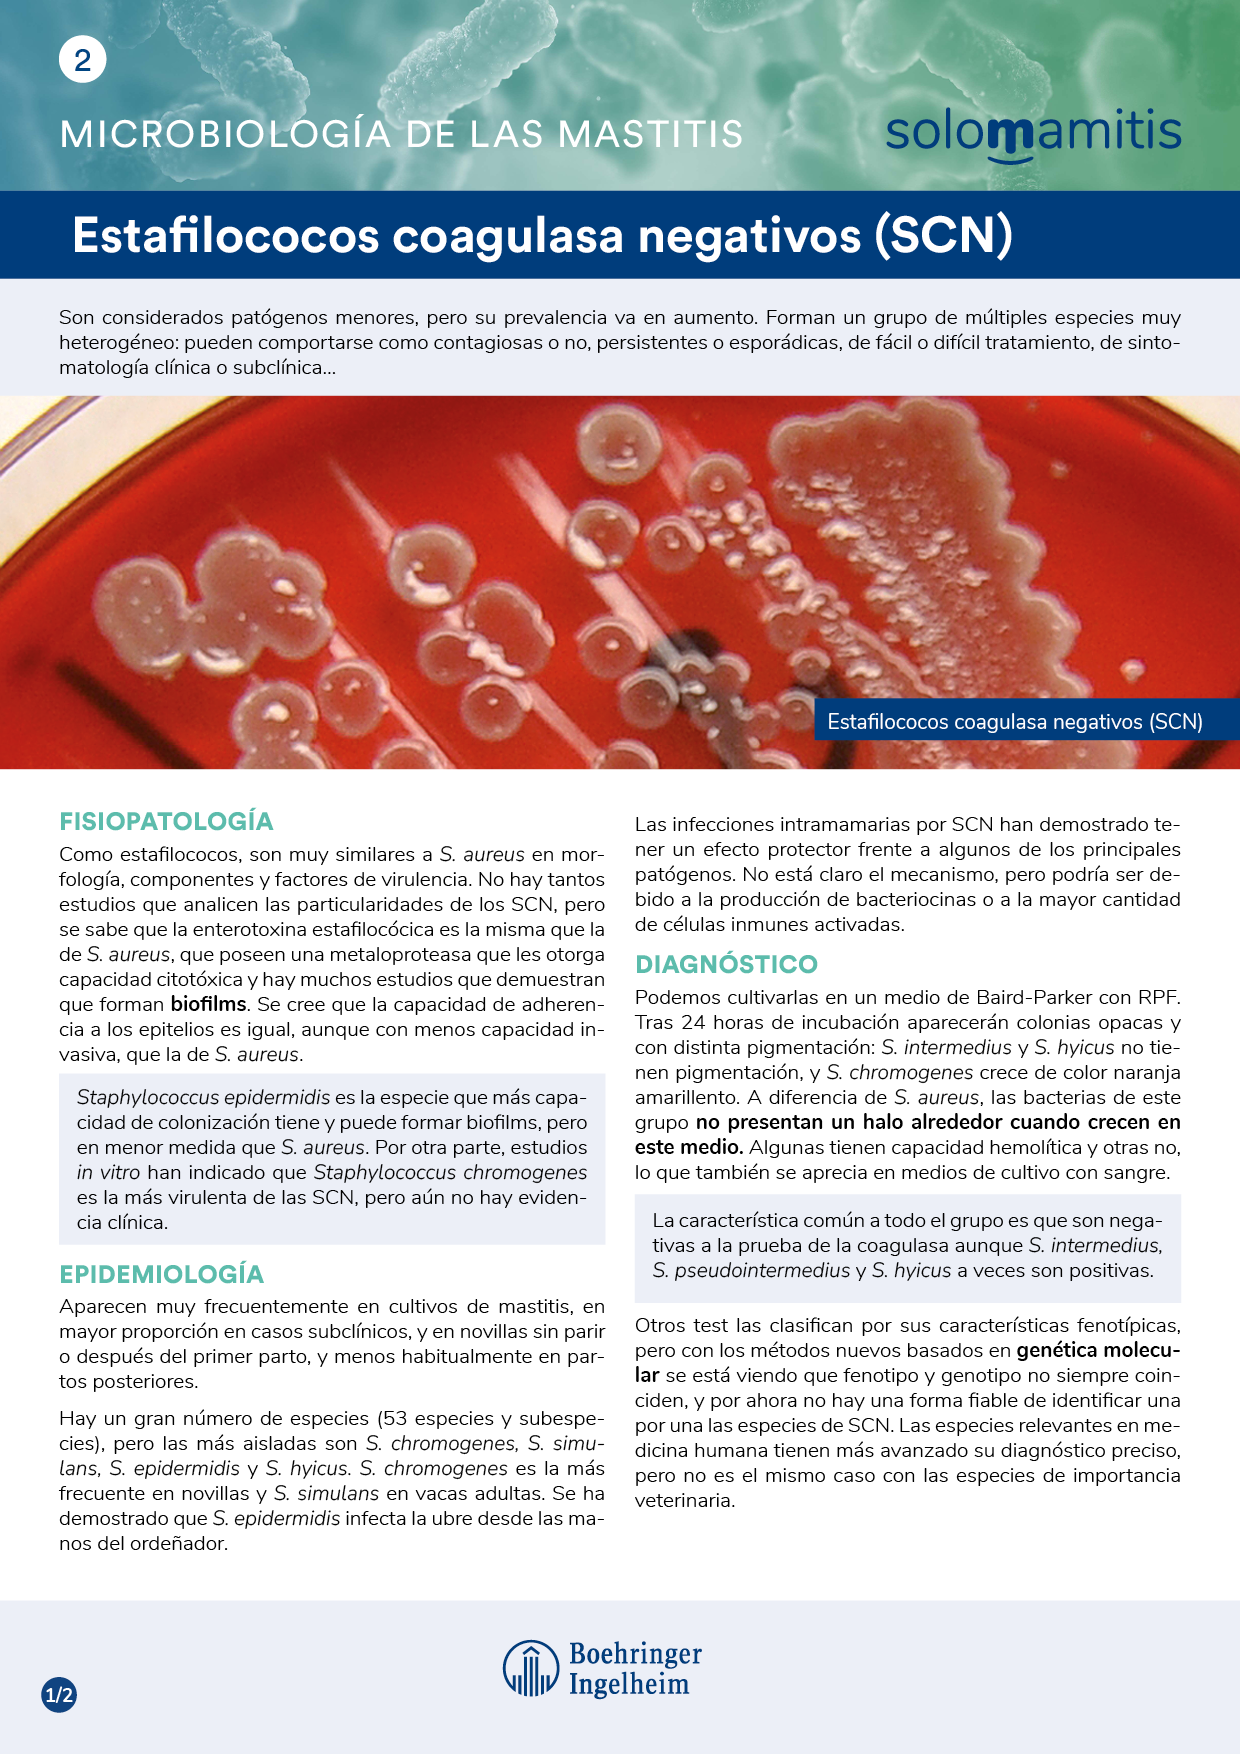 Microbiología de las mastitis: estafilococos coagulasa negativos